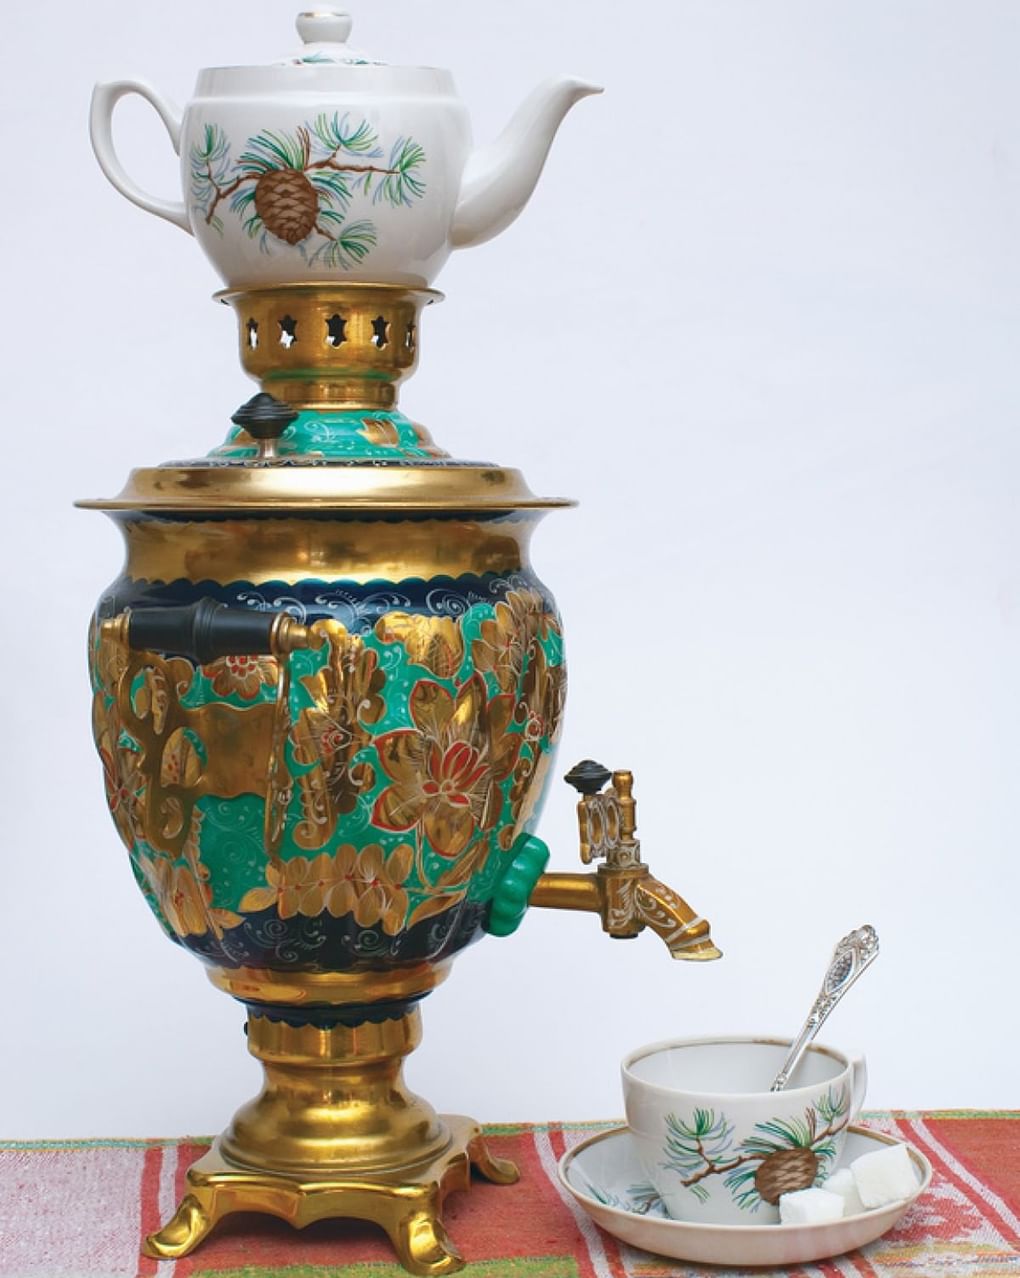 Расписной самовар с заварным чайником и чайной парой. Фотография: Николай Истомин / фотобанк «Лори»